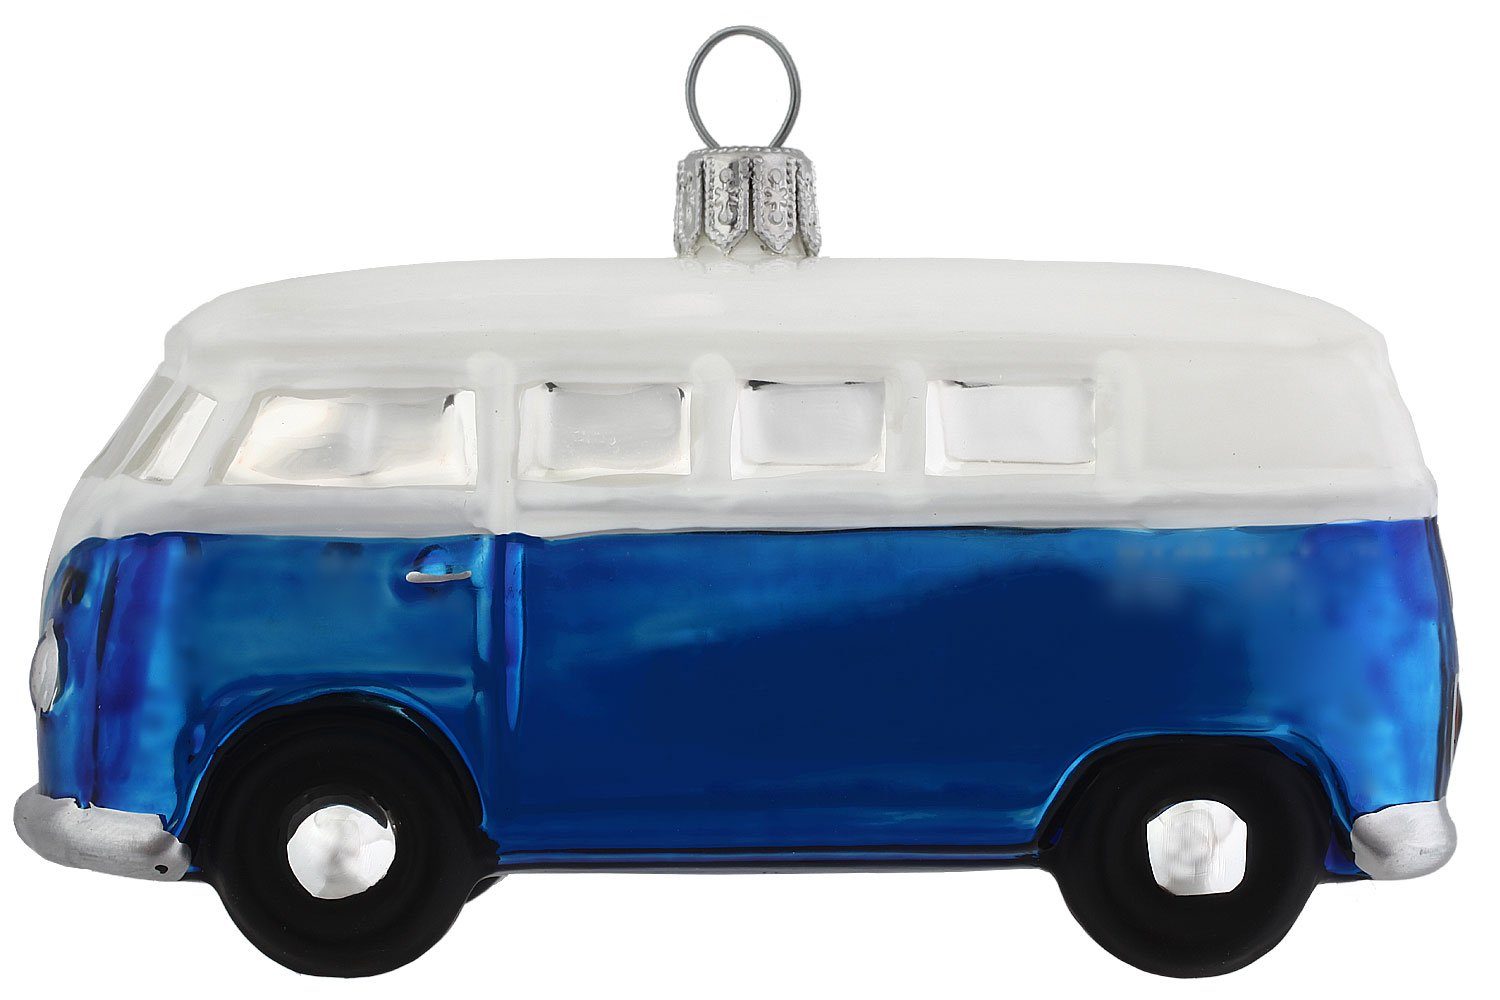 Bus VW Official Christbaumschmuck handdekoriert Hamburger Dekohänger - Licensed blau - mundgeblasen Weihnachtskontor Produkt,